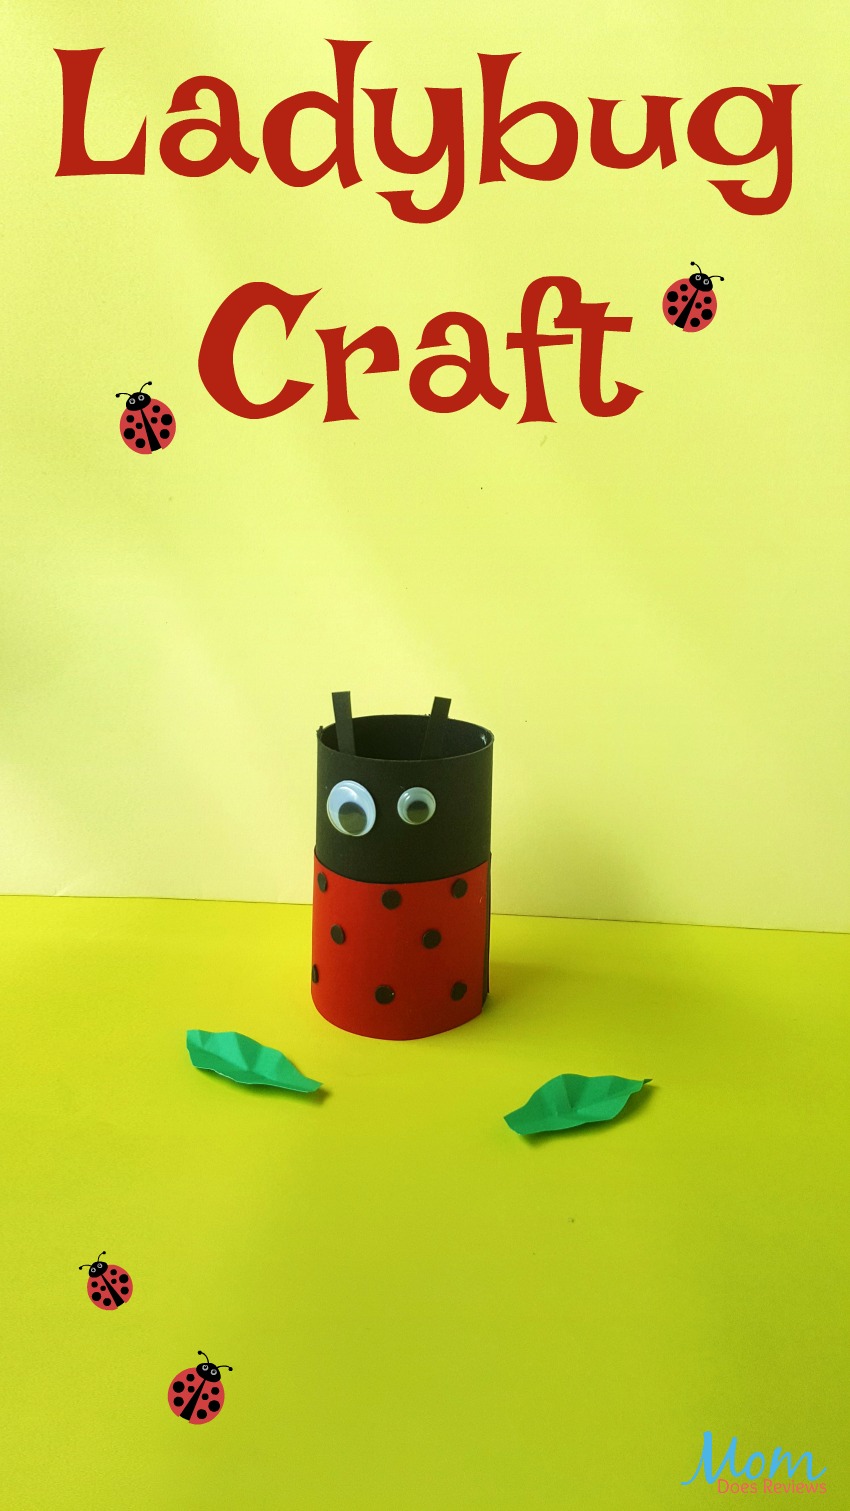 Ladybug Toilet Paper Roll #Craft for Kids #ladybug #craftsforkids #easycraft #fun 